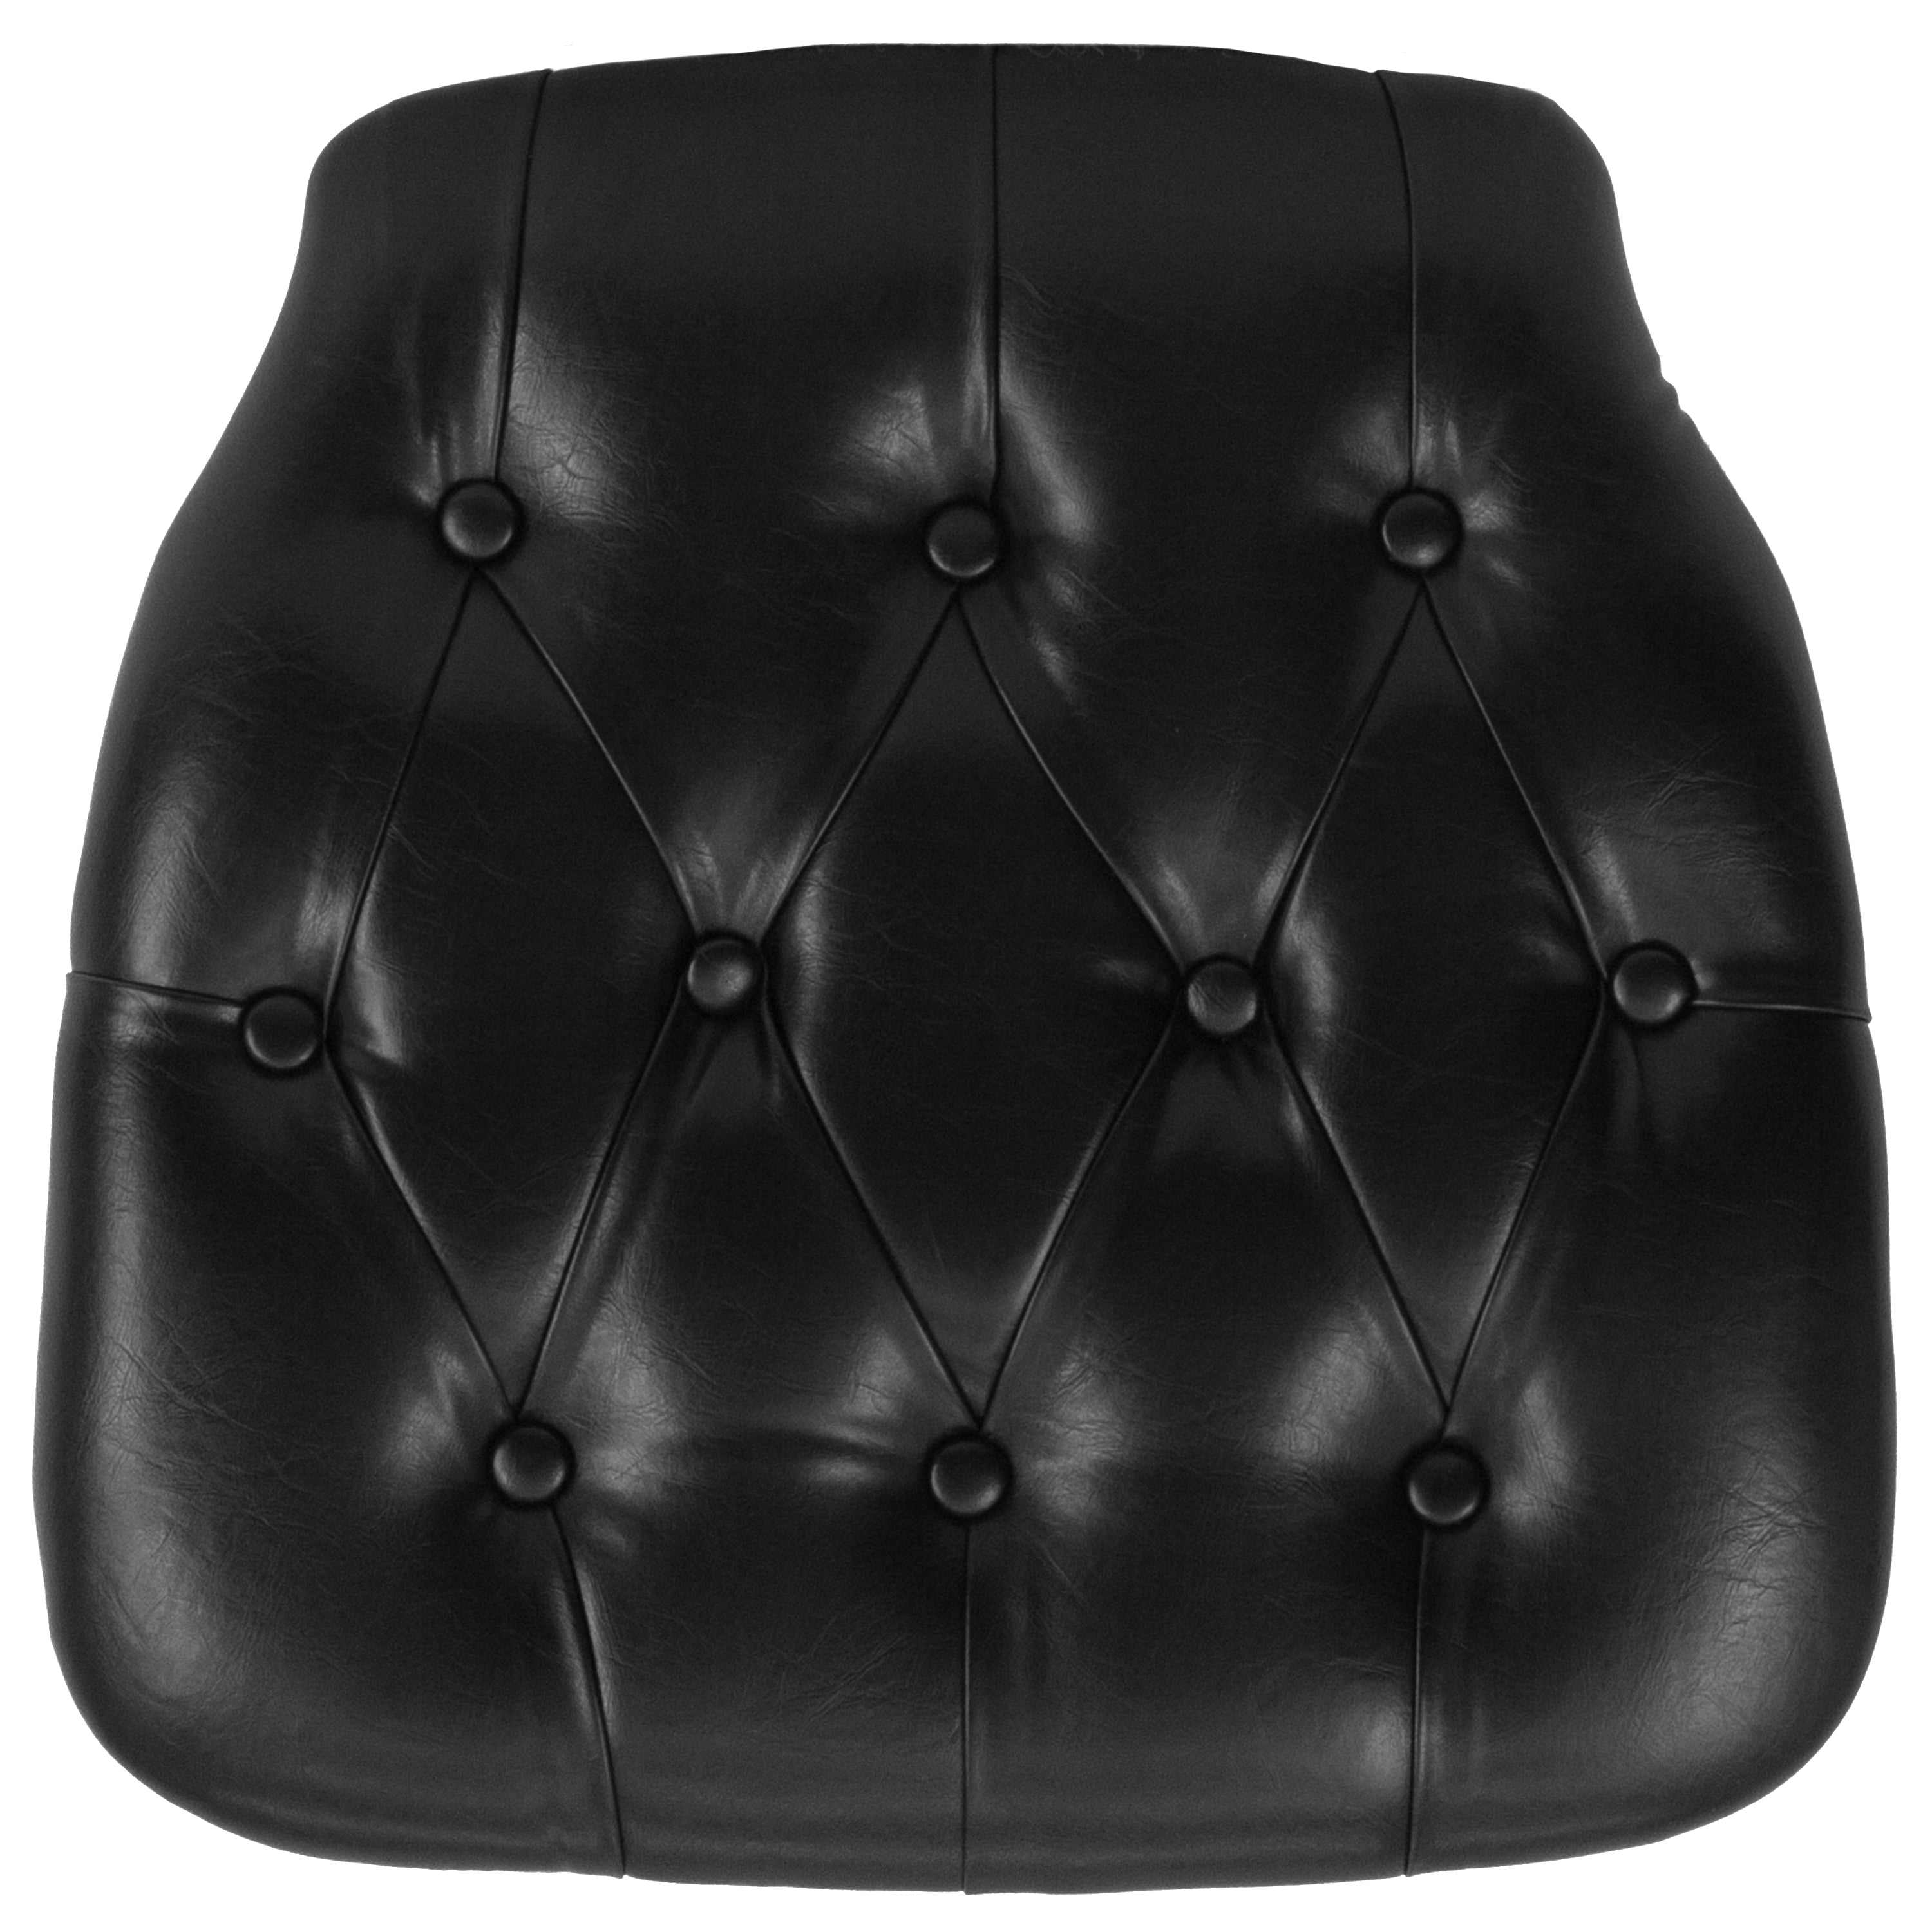 Hard Tufted Vinyl Chiavari Chair Cushion-Tufted Vinyl Chiavari Cushion-Flash Furniture-Wall2Wall Furnishings